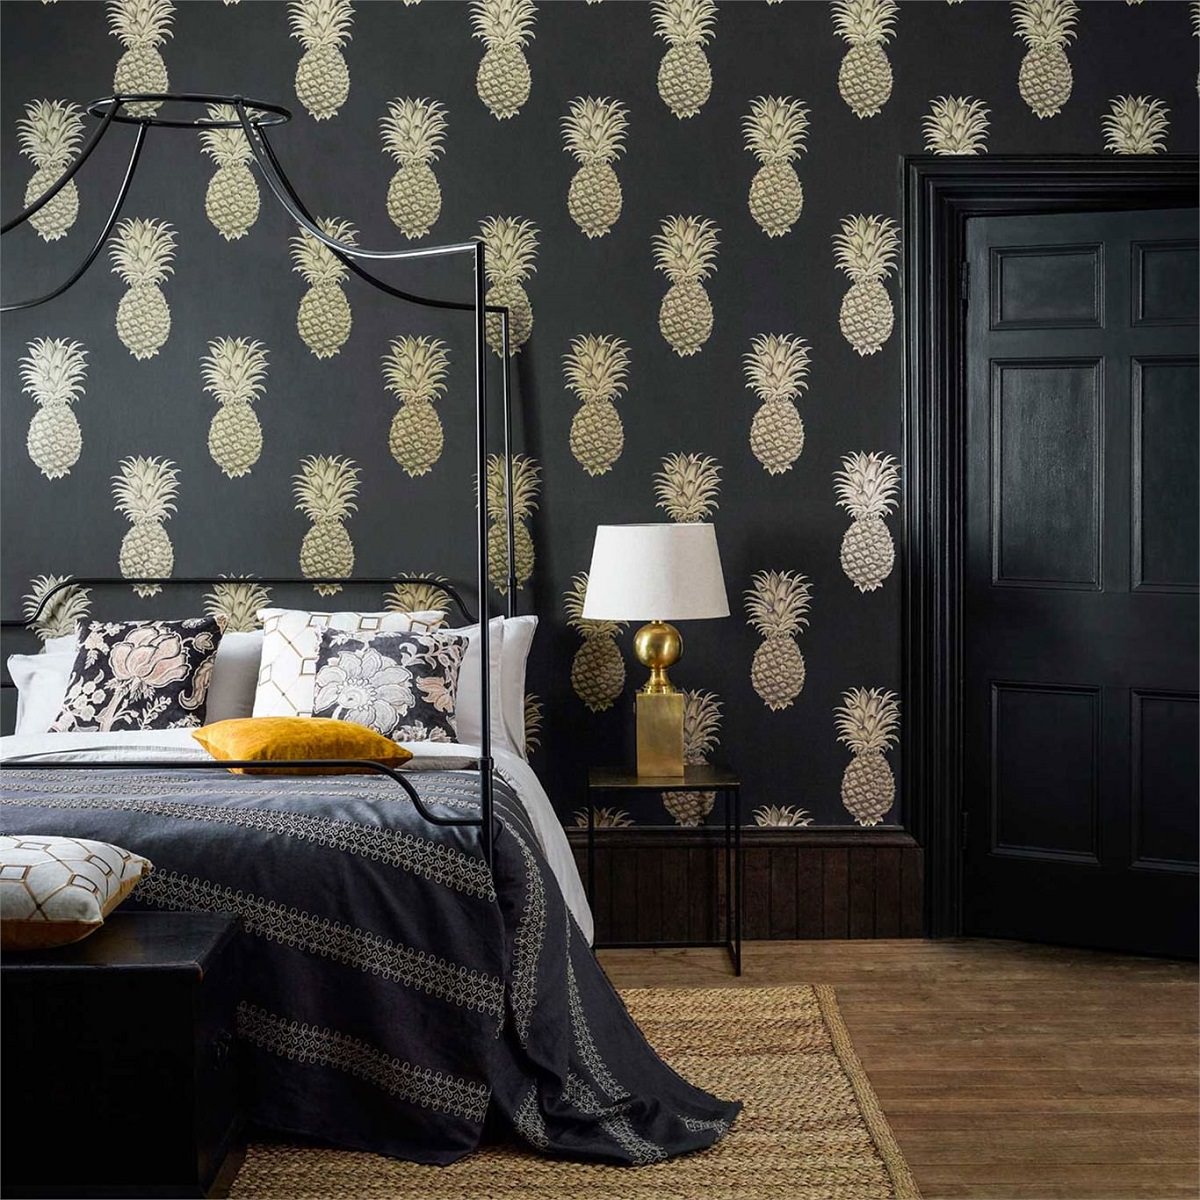 دکوراسیون داخلی اتاق خواب با کاغذ دیواری مشکی و تخت فلزی سایبان دار که از الگوهای آناناس روی دیوار آن استفاده شده است